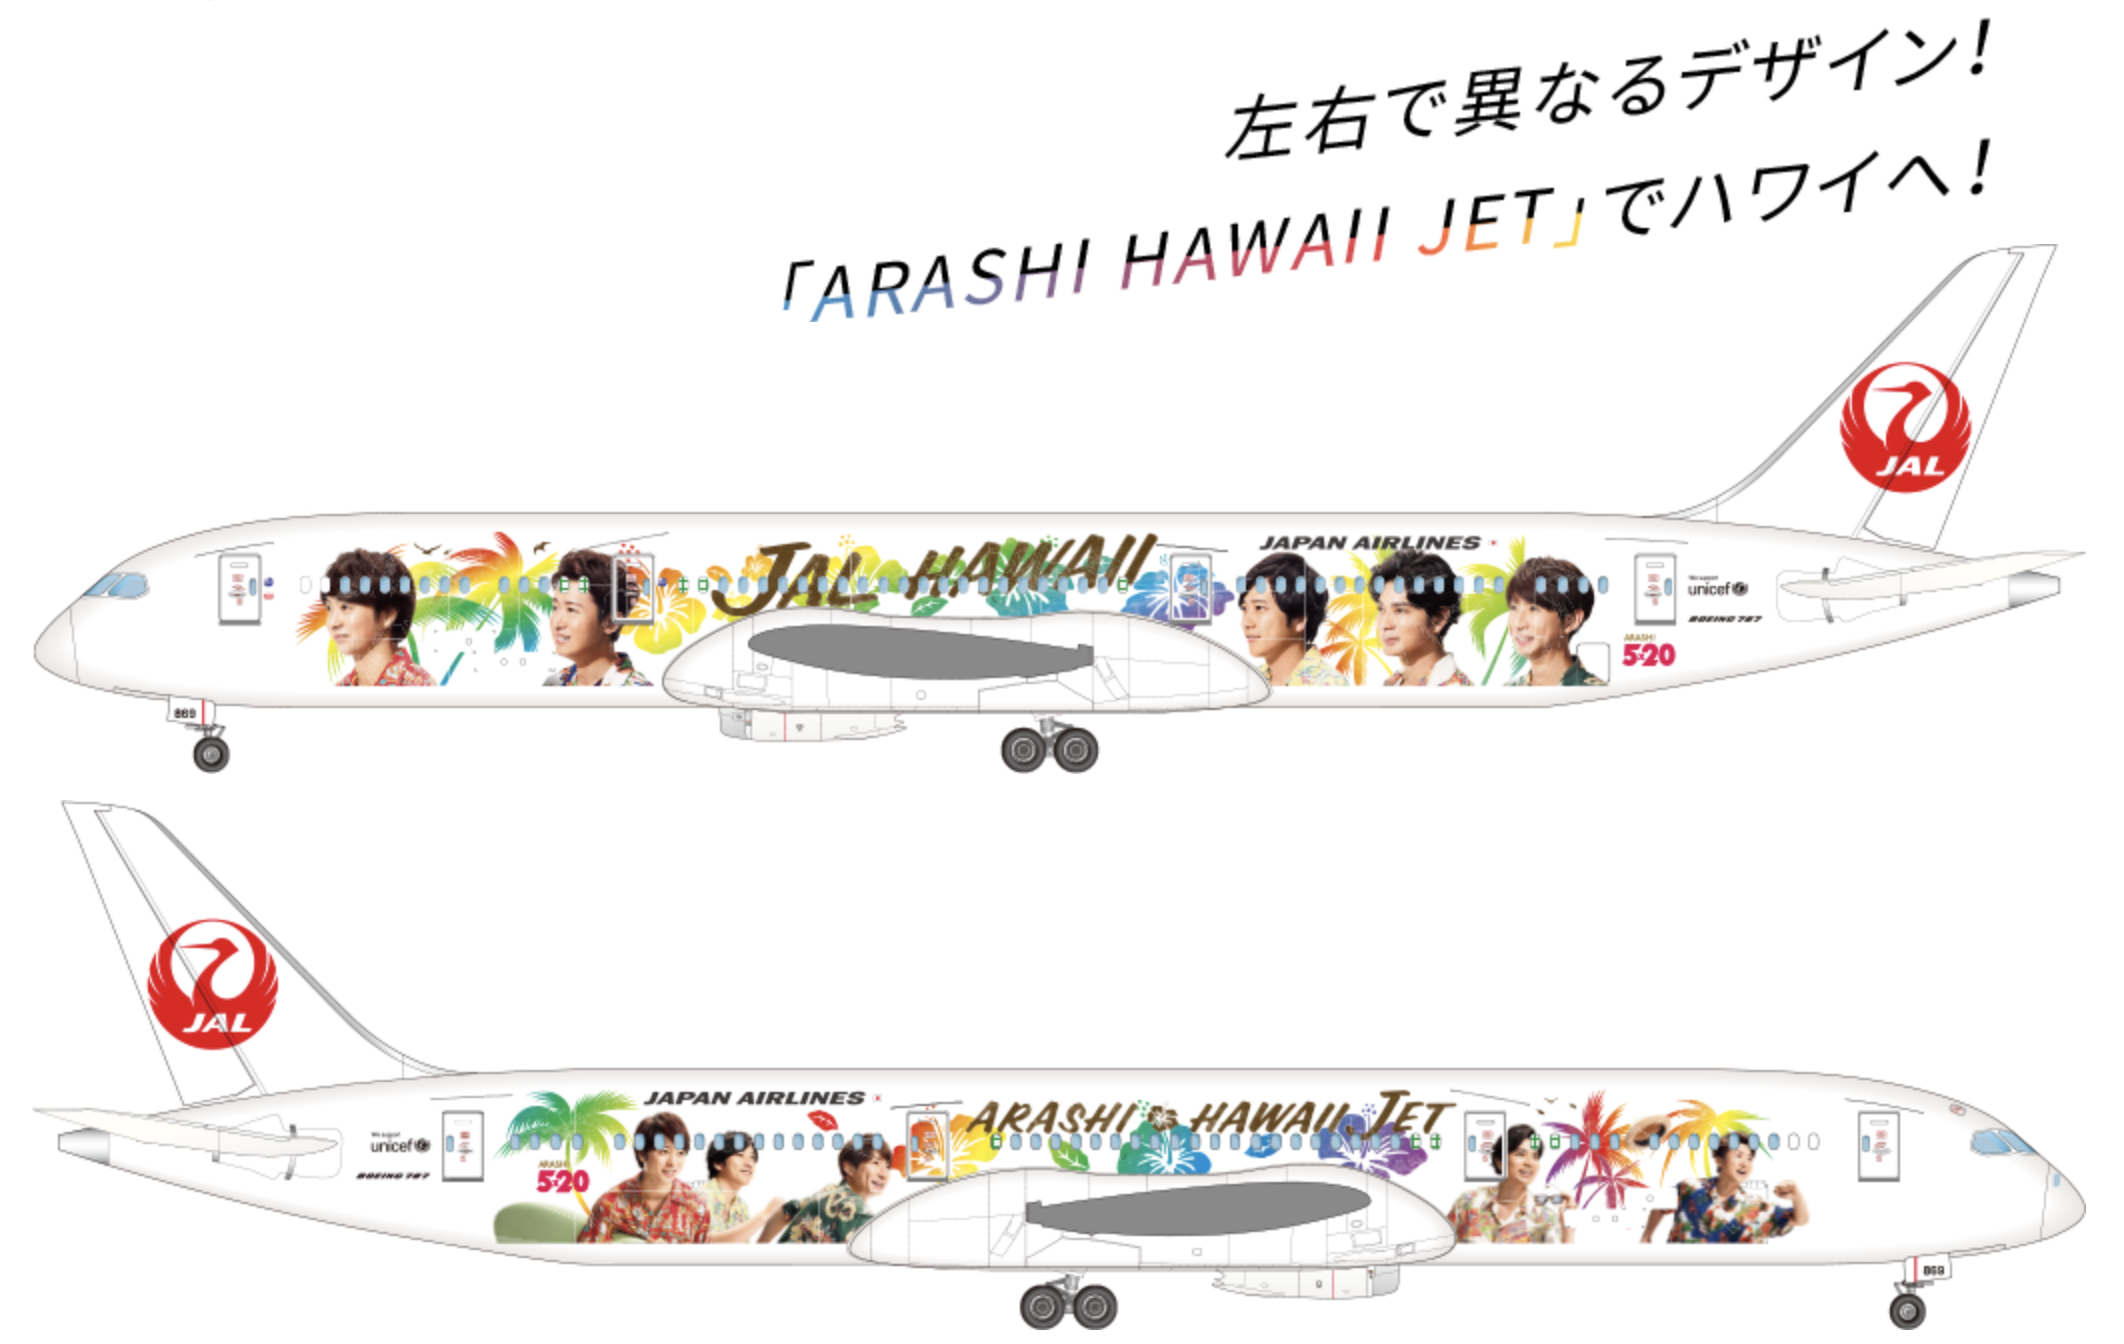 Jalハワイ嵐ジェット運航情報 Arashi Hawaii Jet はどこで見られる 運航スケジュールをほぼ毎日更新 シテイリョウコウ